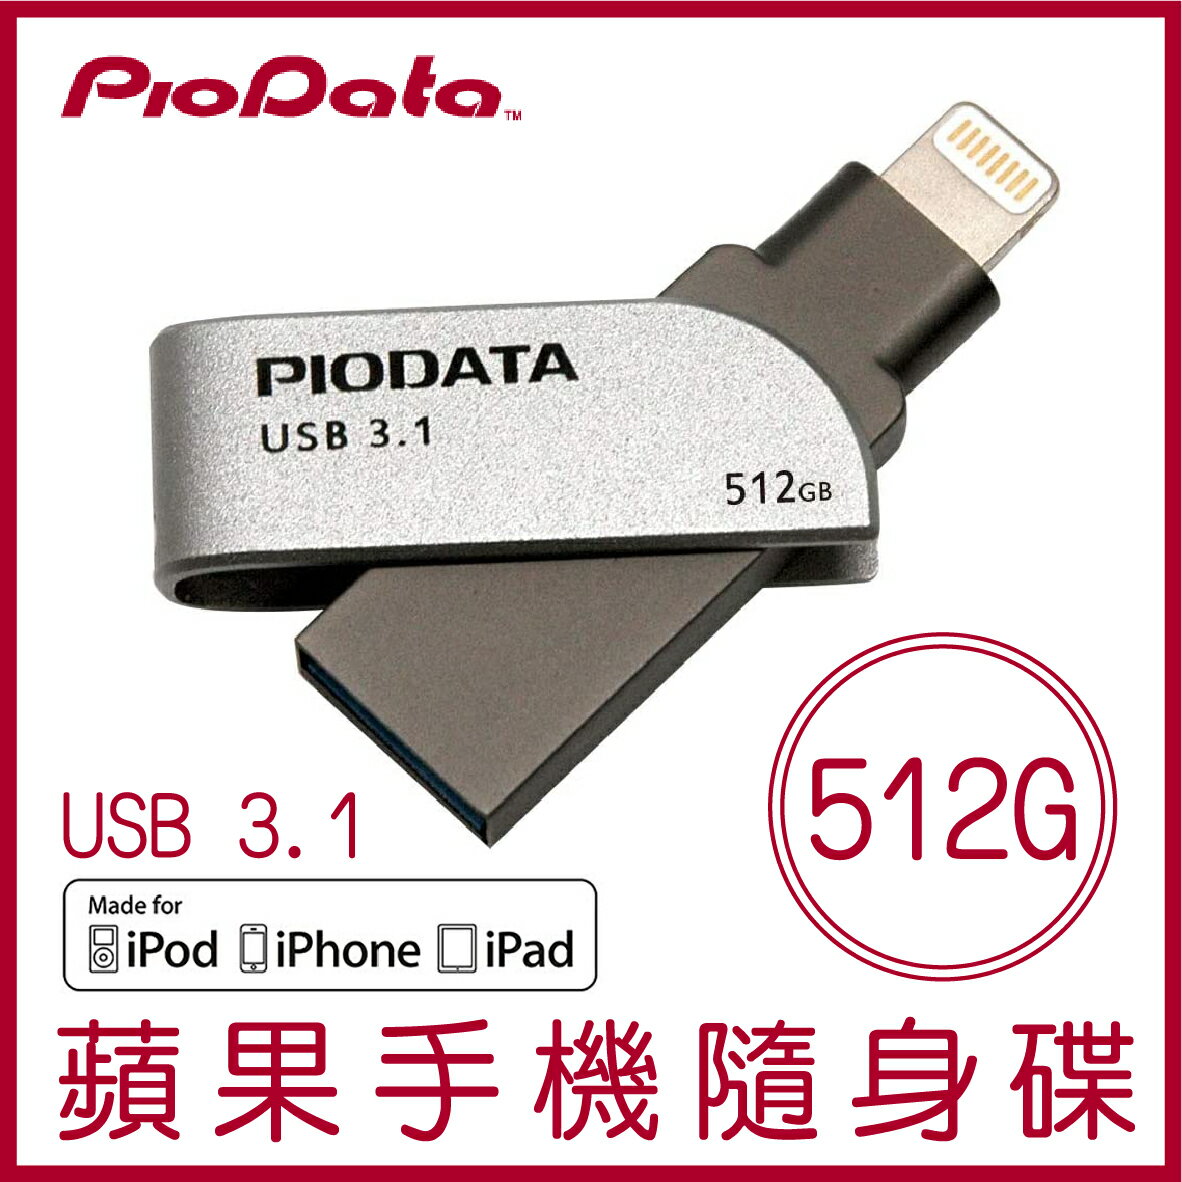 【現貨】PIODATA iXflash 512GB Lightning USB3.1 蘋果隨身碟 iOS專用 OTG 雙用隨身碟【APP下單4%點數回饋】